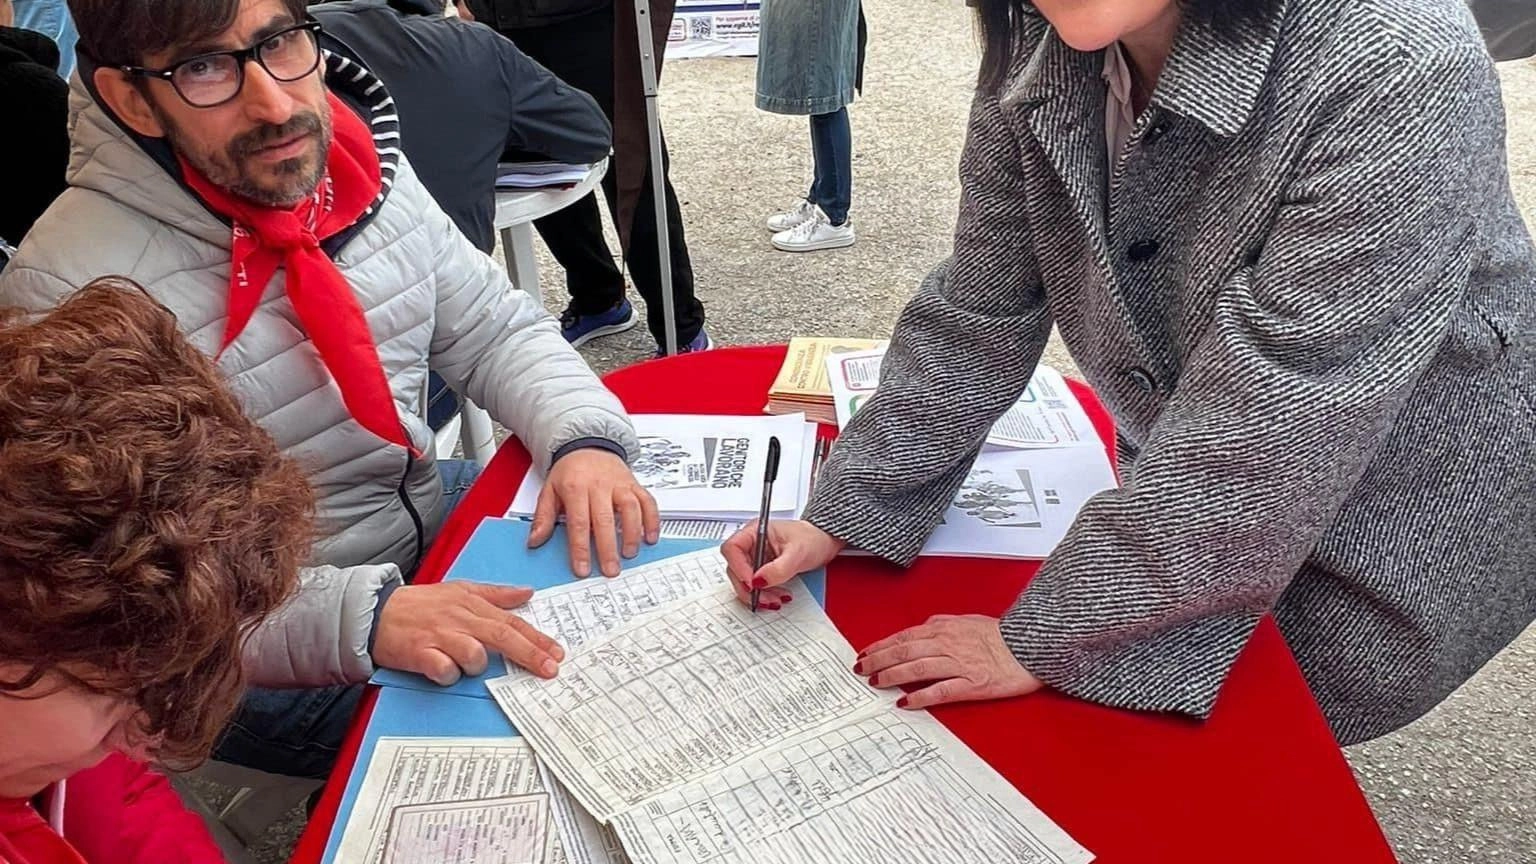 In provincia di Rimini, già 1000 firme raccolte a sostegno dei referendum popolari 2025 "Il lavoro è un bene comune". Sostenitori di spicco e campagna di raccolta firme in corso.